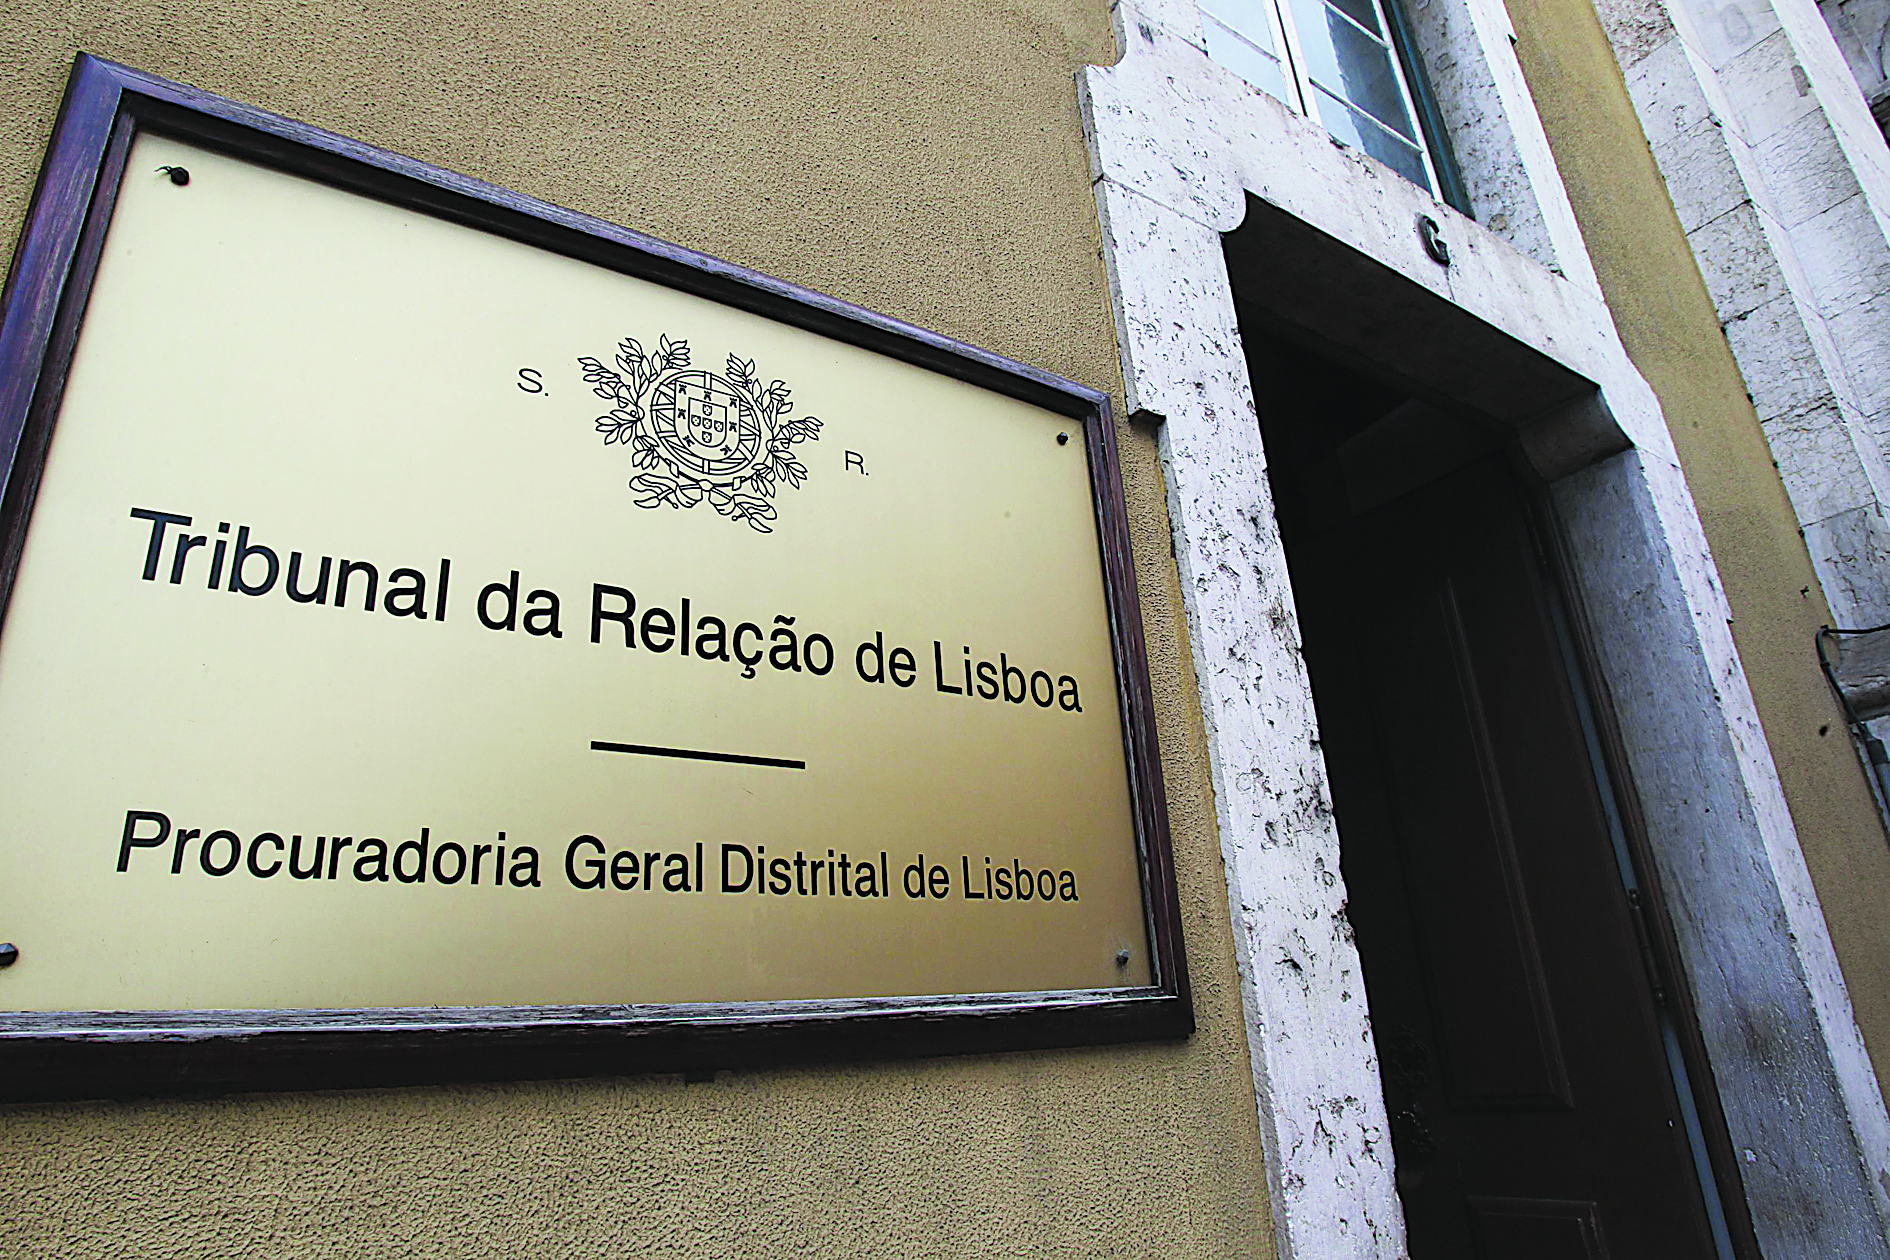 Sistema informático do Tribunal da Relação de Lisboa sem funcionar desde 6.ª feira